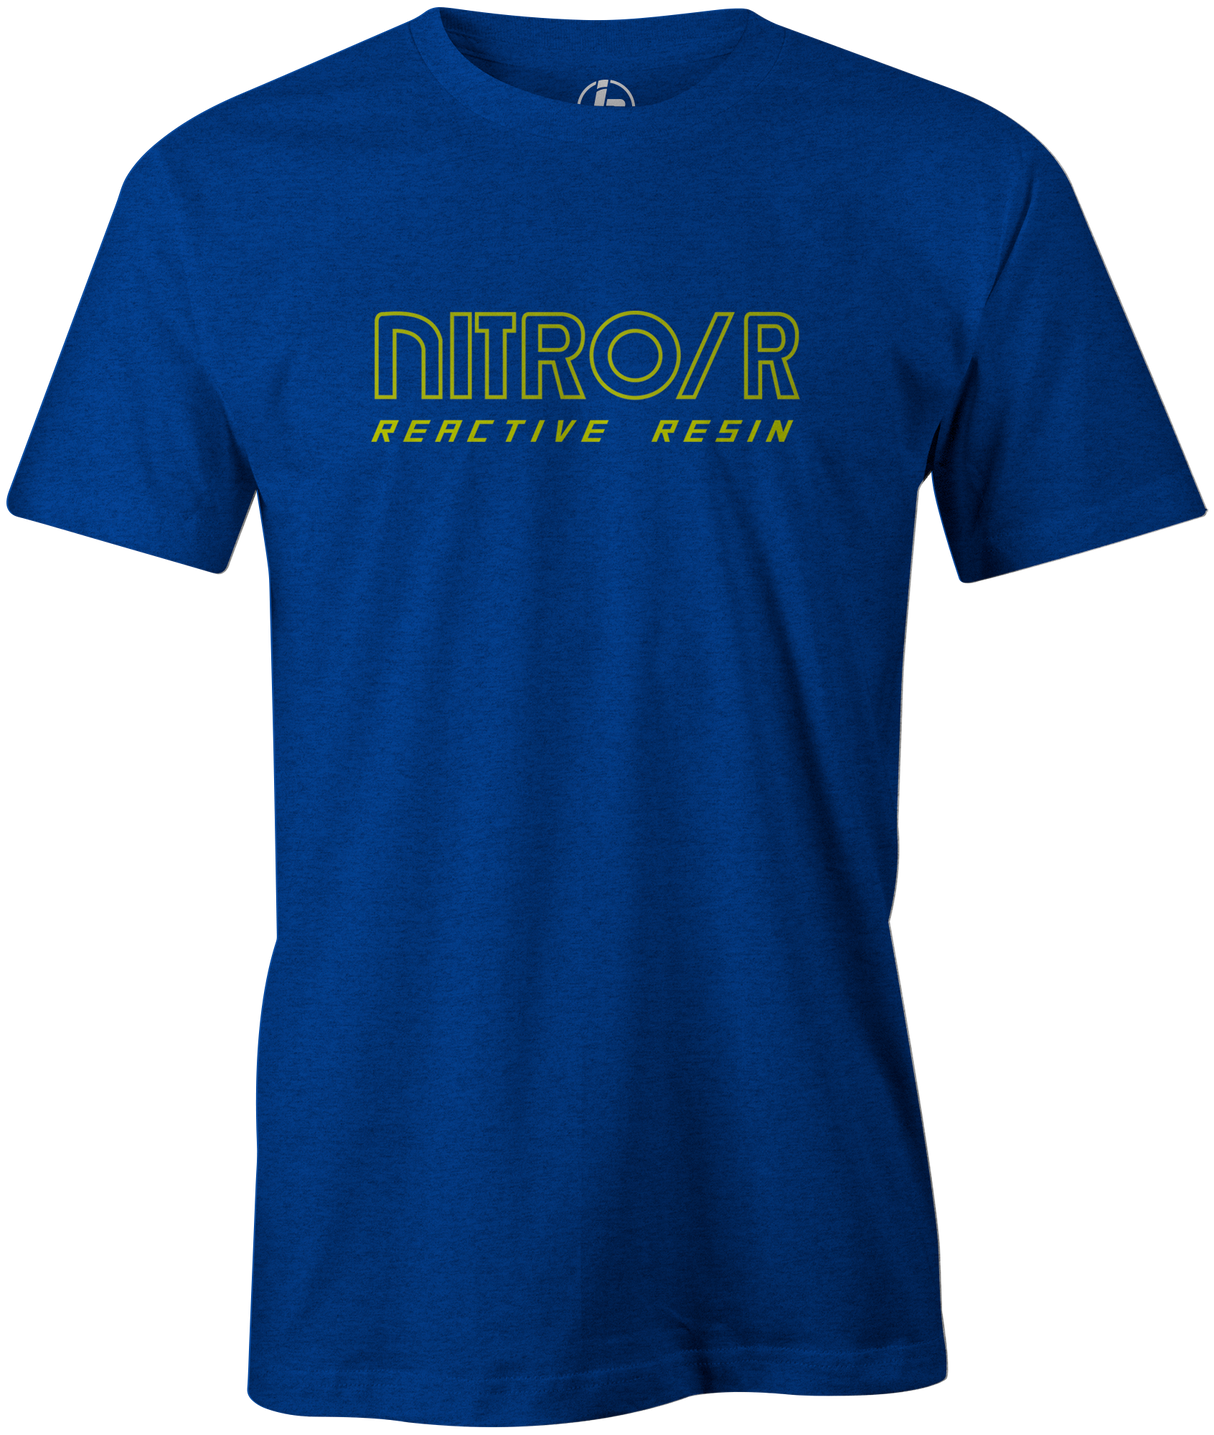 Nitro/R Men's T-Shirt, Blue, Bowling, bowling ball, ebonite, throwback, retro, vintage, old school, tshirt, tee, tee-shirt, tee shirt.